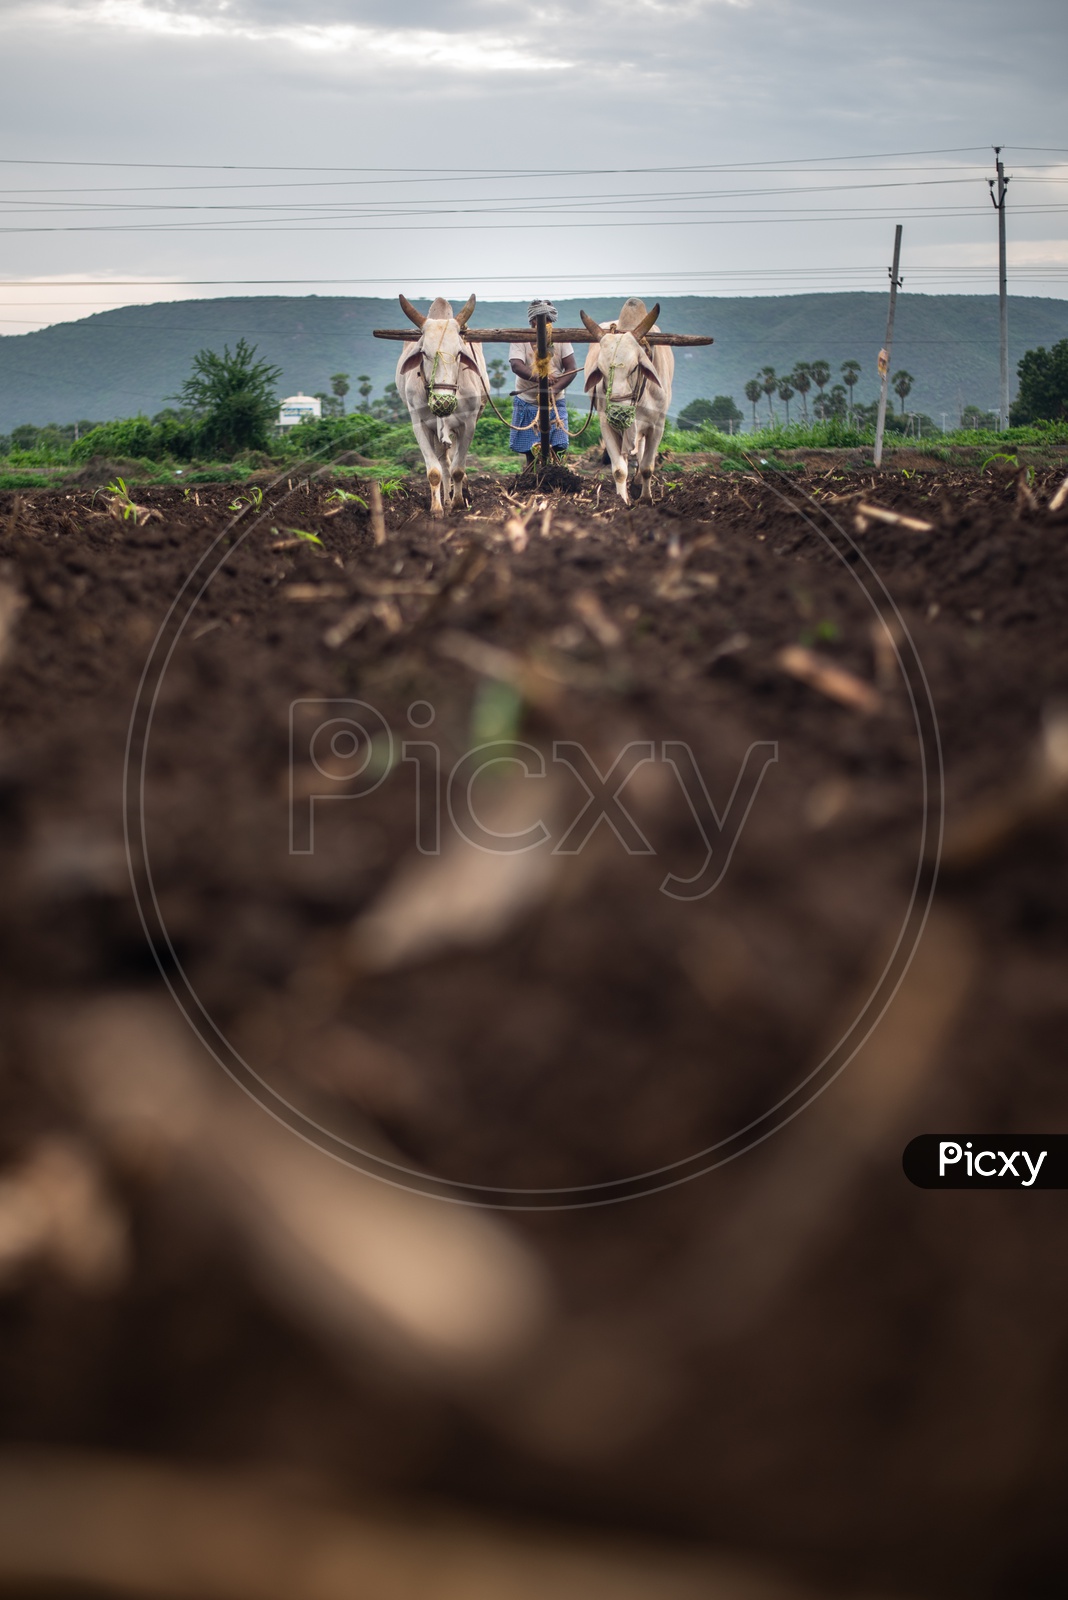 A farmer plowing/ploughing in a field/crop